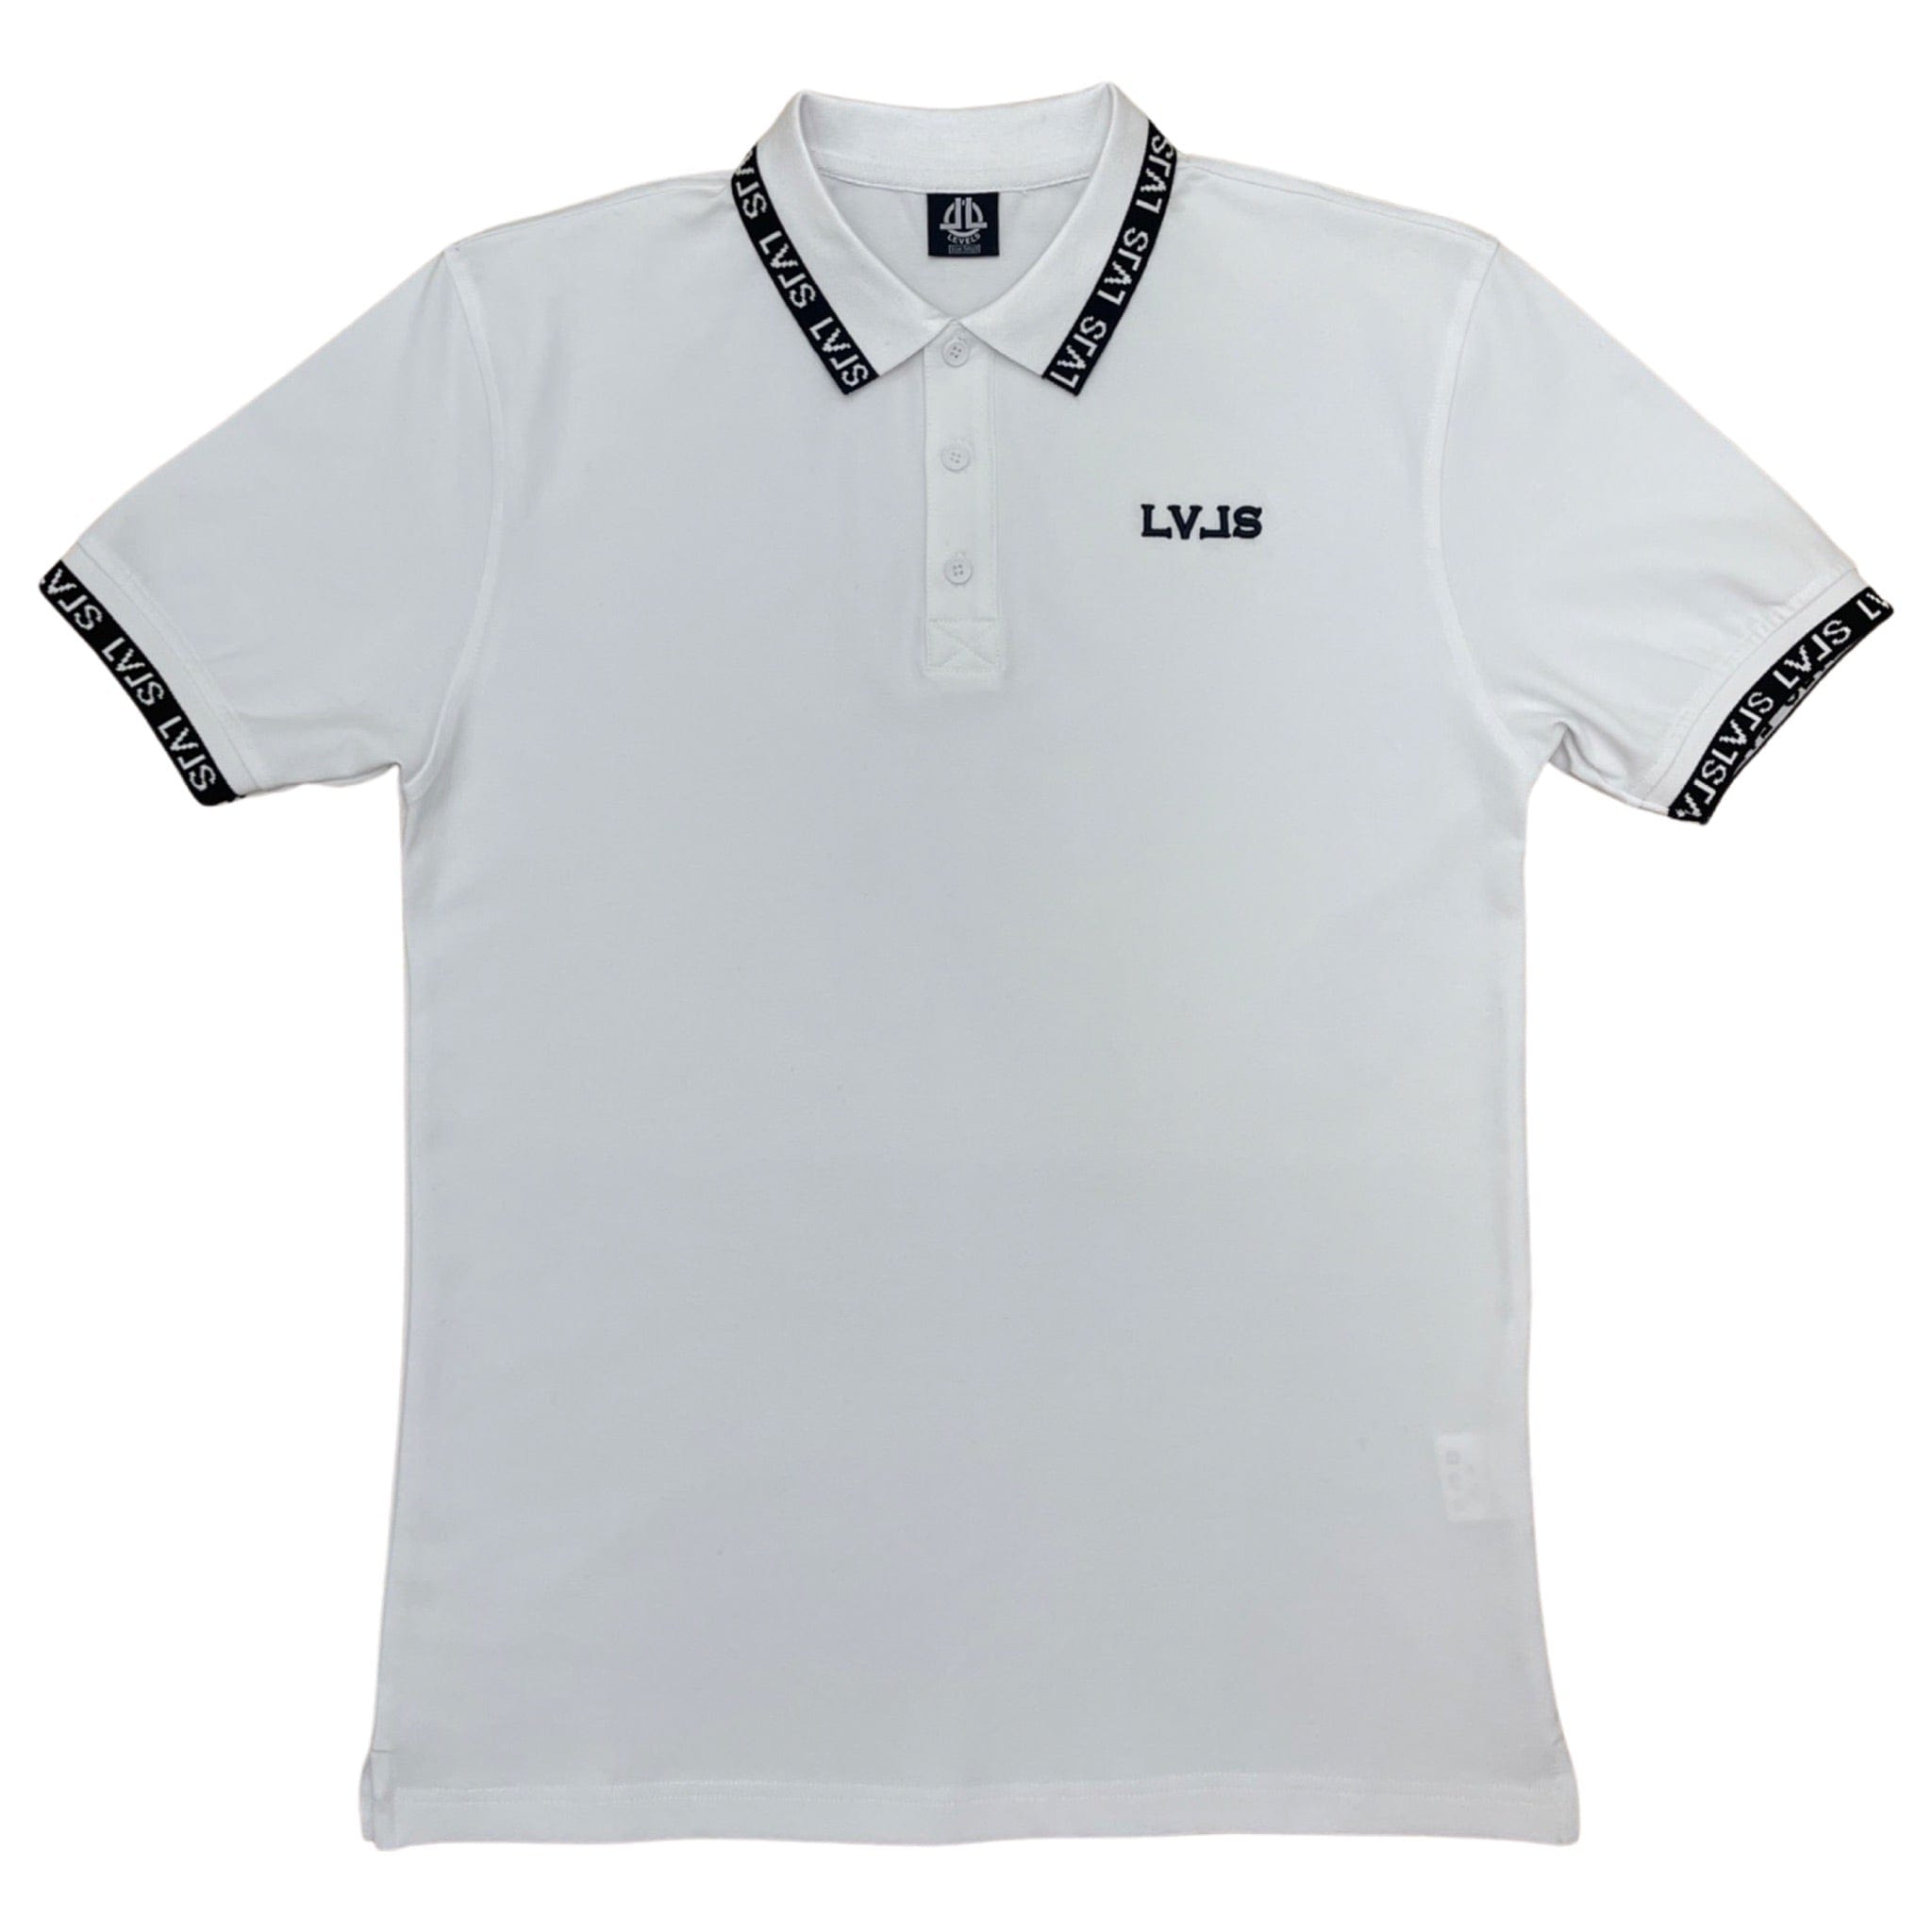 LEVELS, LLC Shirts & Tops LVLS PREMIUM POLO (WHITE)